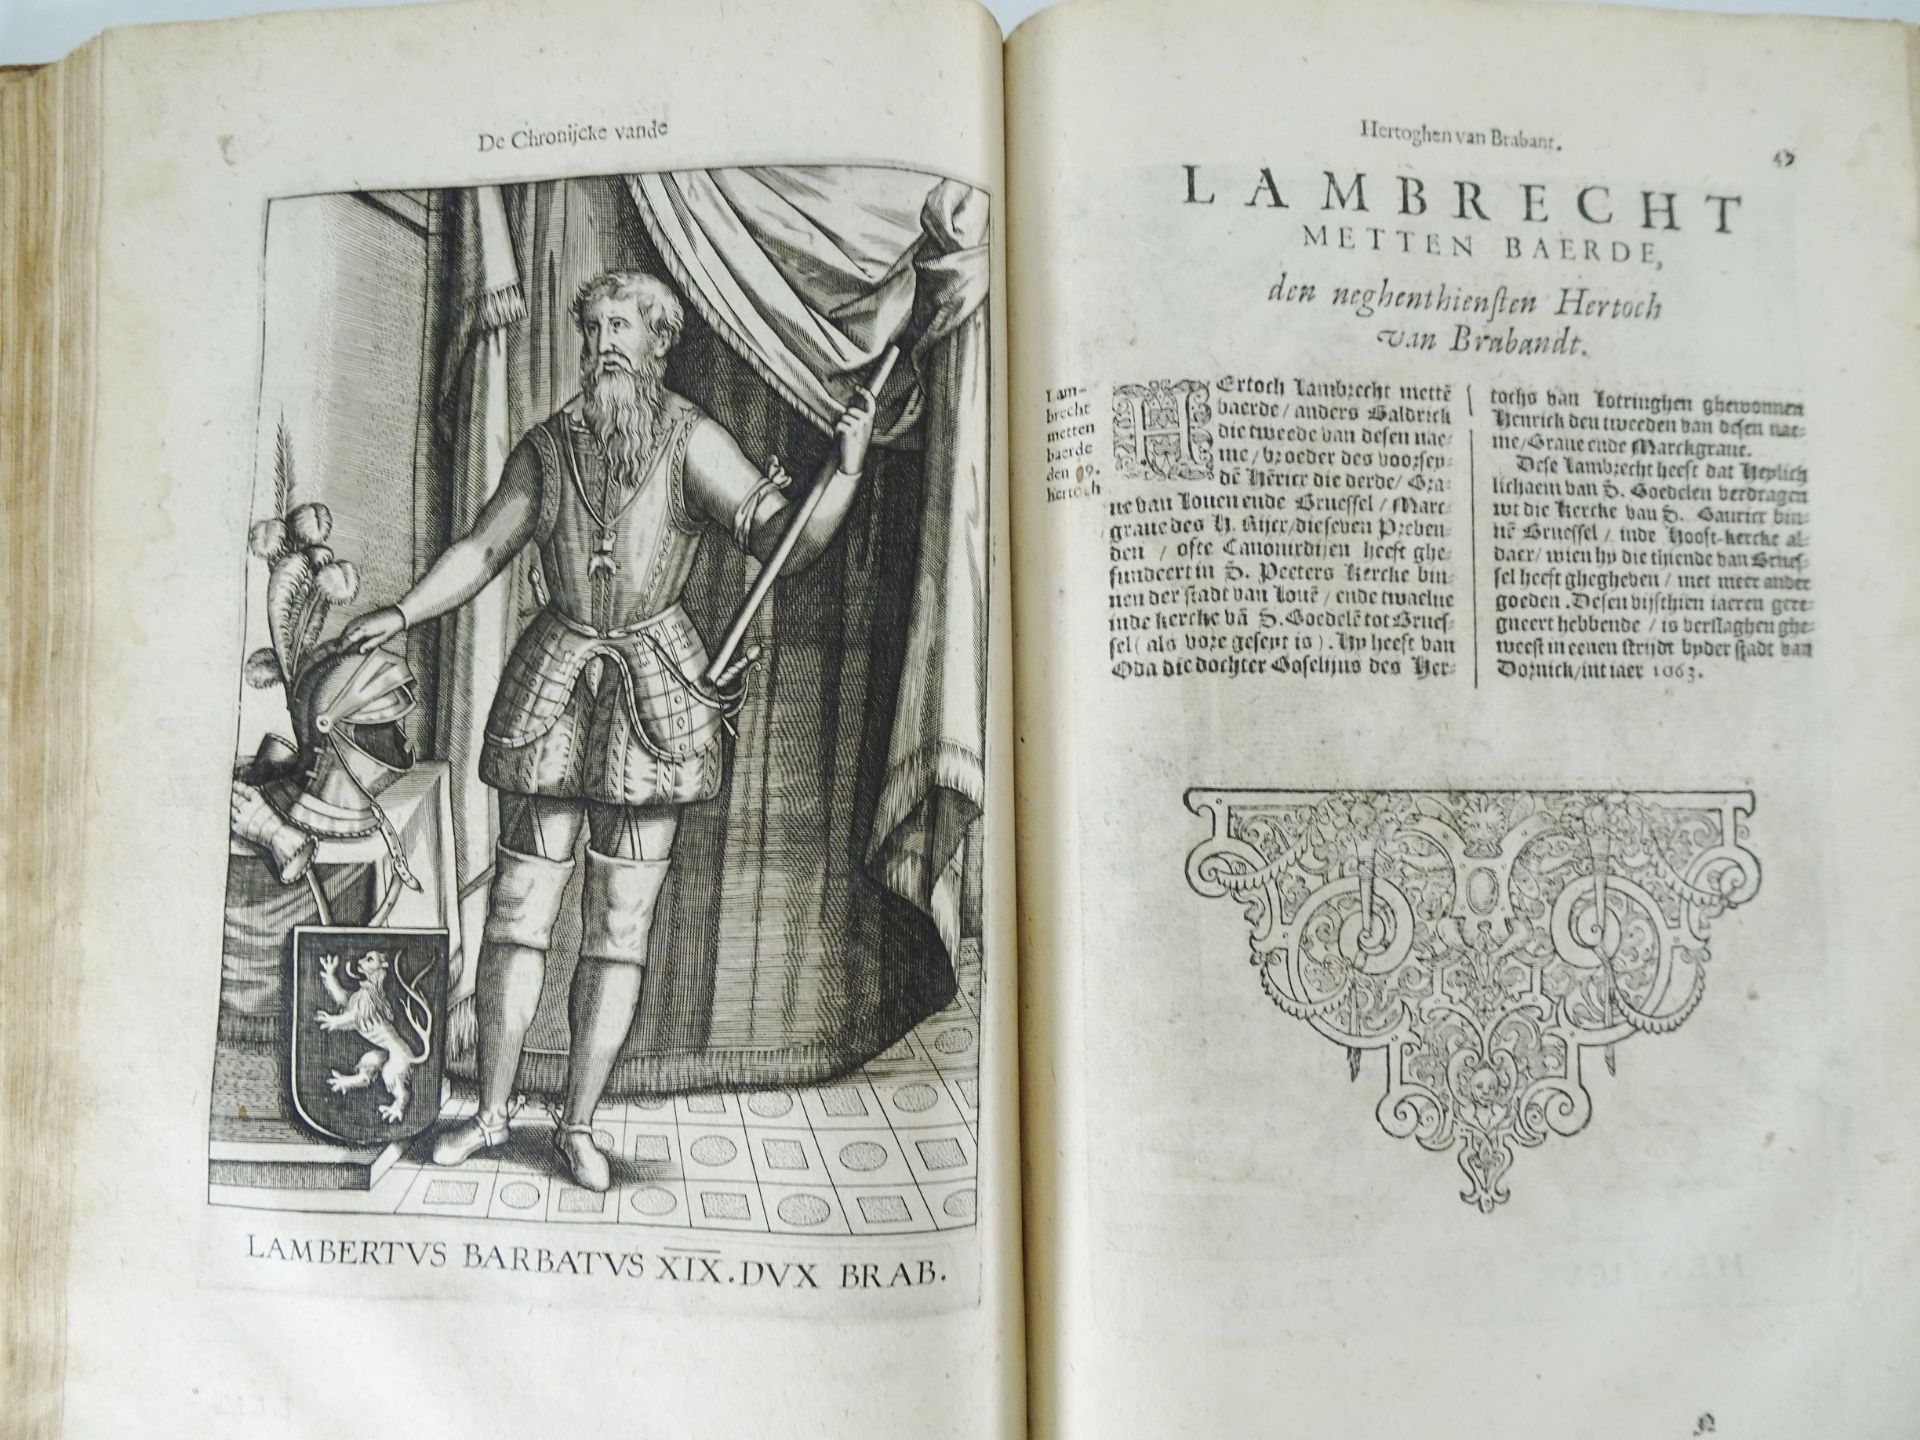 History| Van Haecht Goidtsenhovn Laurens, "Chroniicke van de Hertoghen van Brabant", 1606 - Image 16 of 18